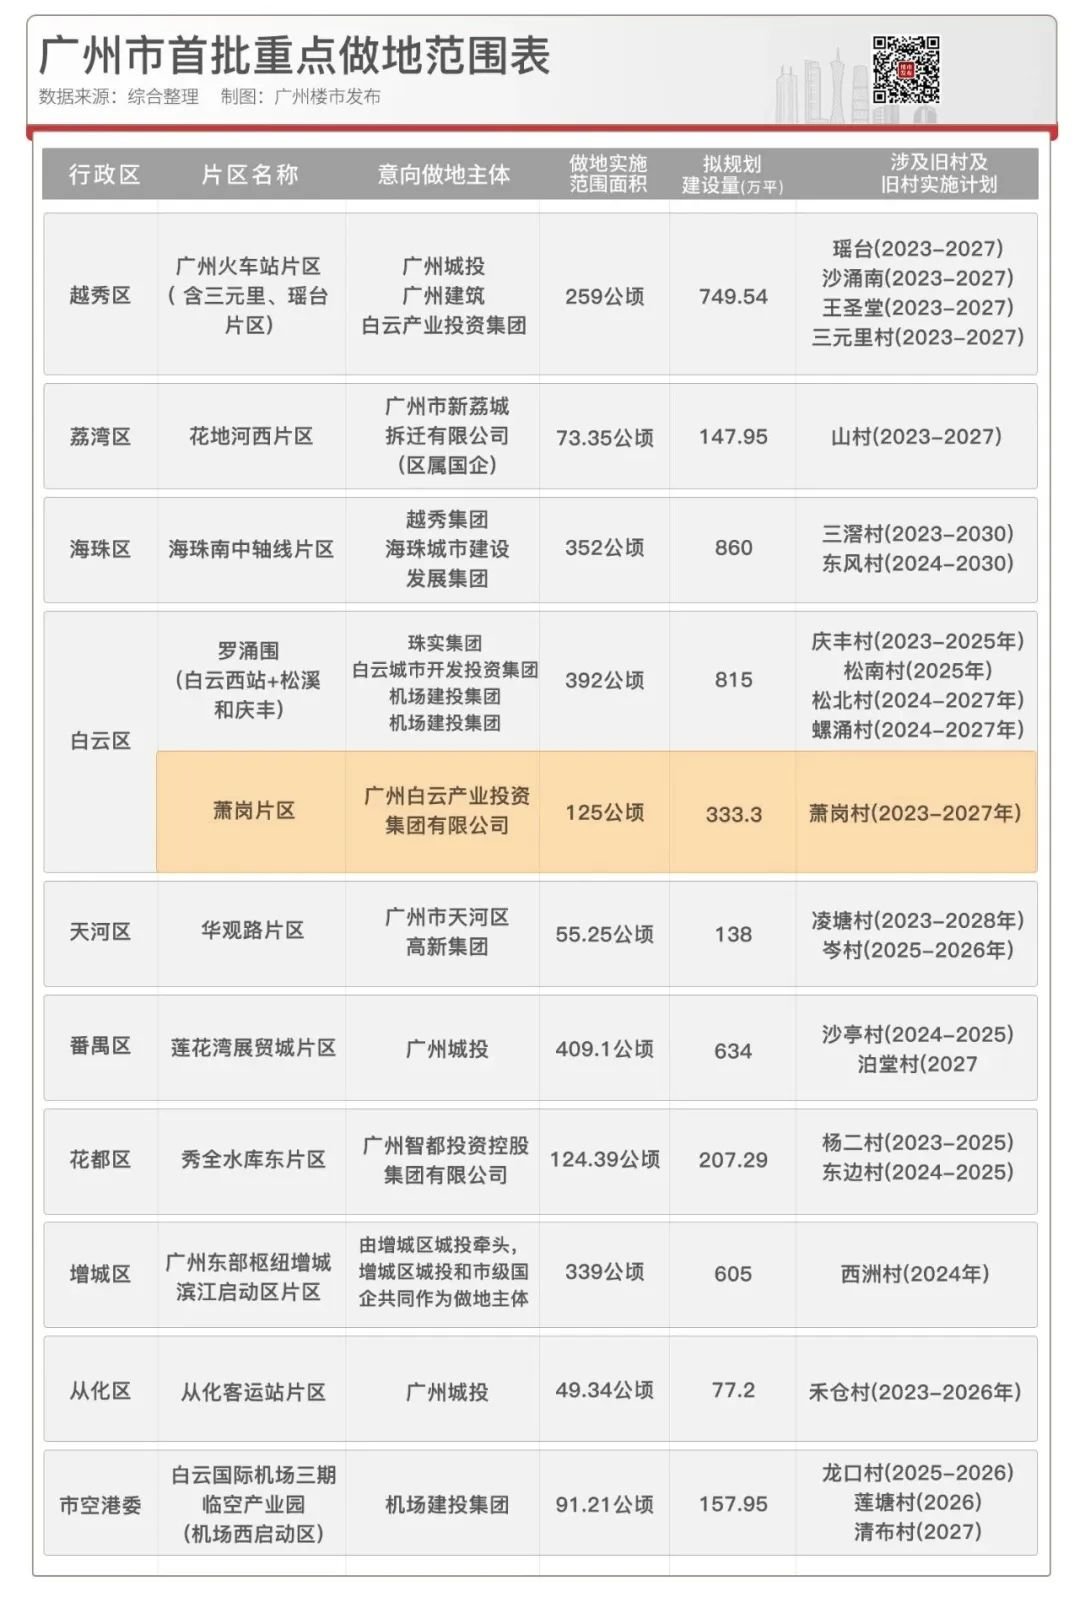 广州天下先生态园门票图片